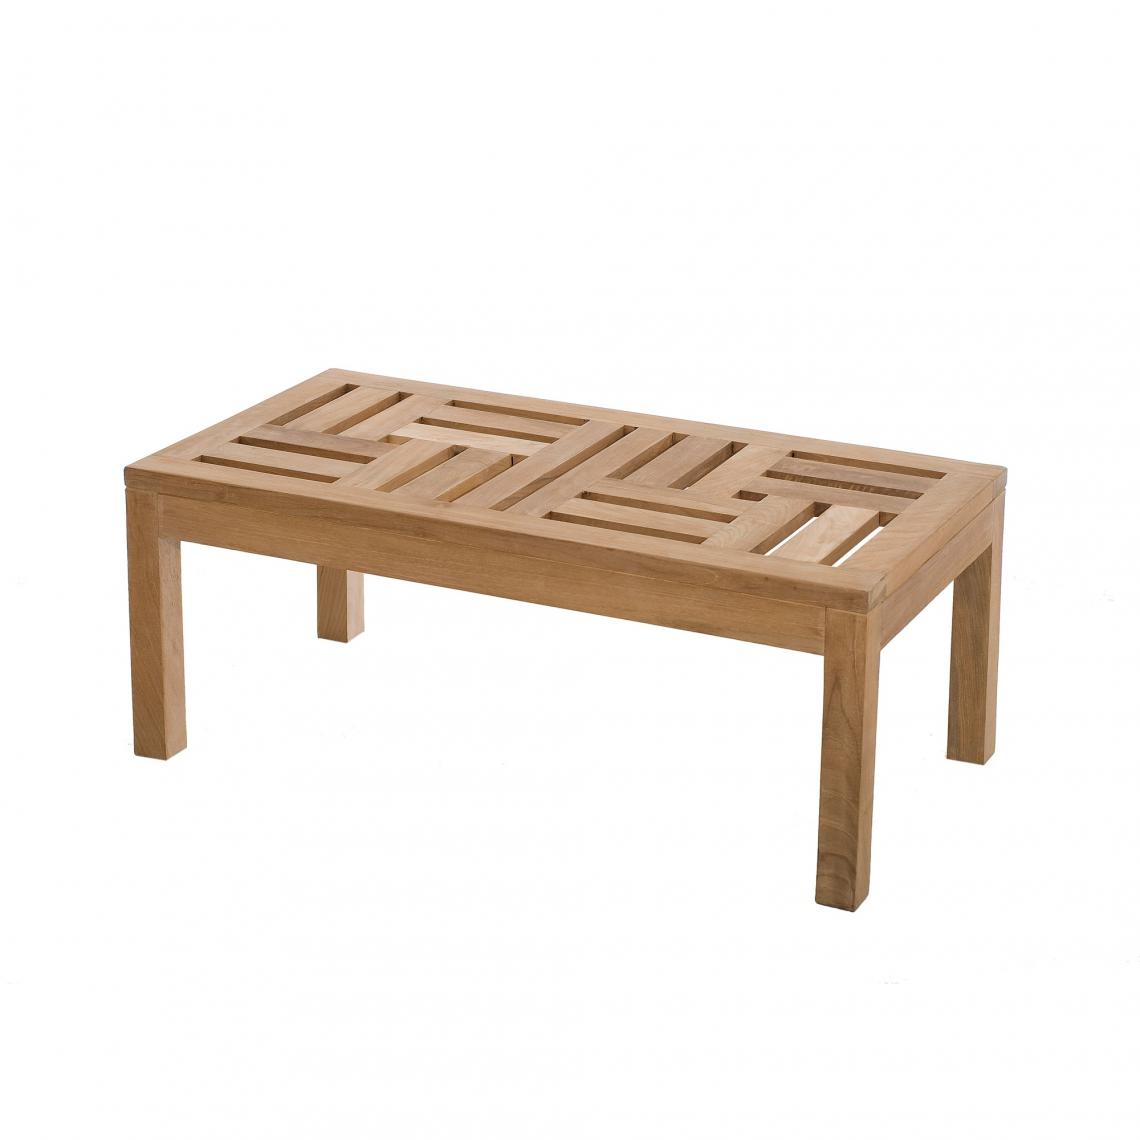 MACABANE - Table basse rectangulaire 100 x 50 cm en teck massif - Teck - Tables de jardin